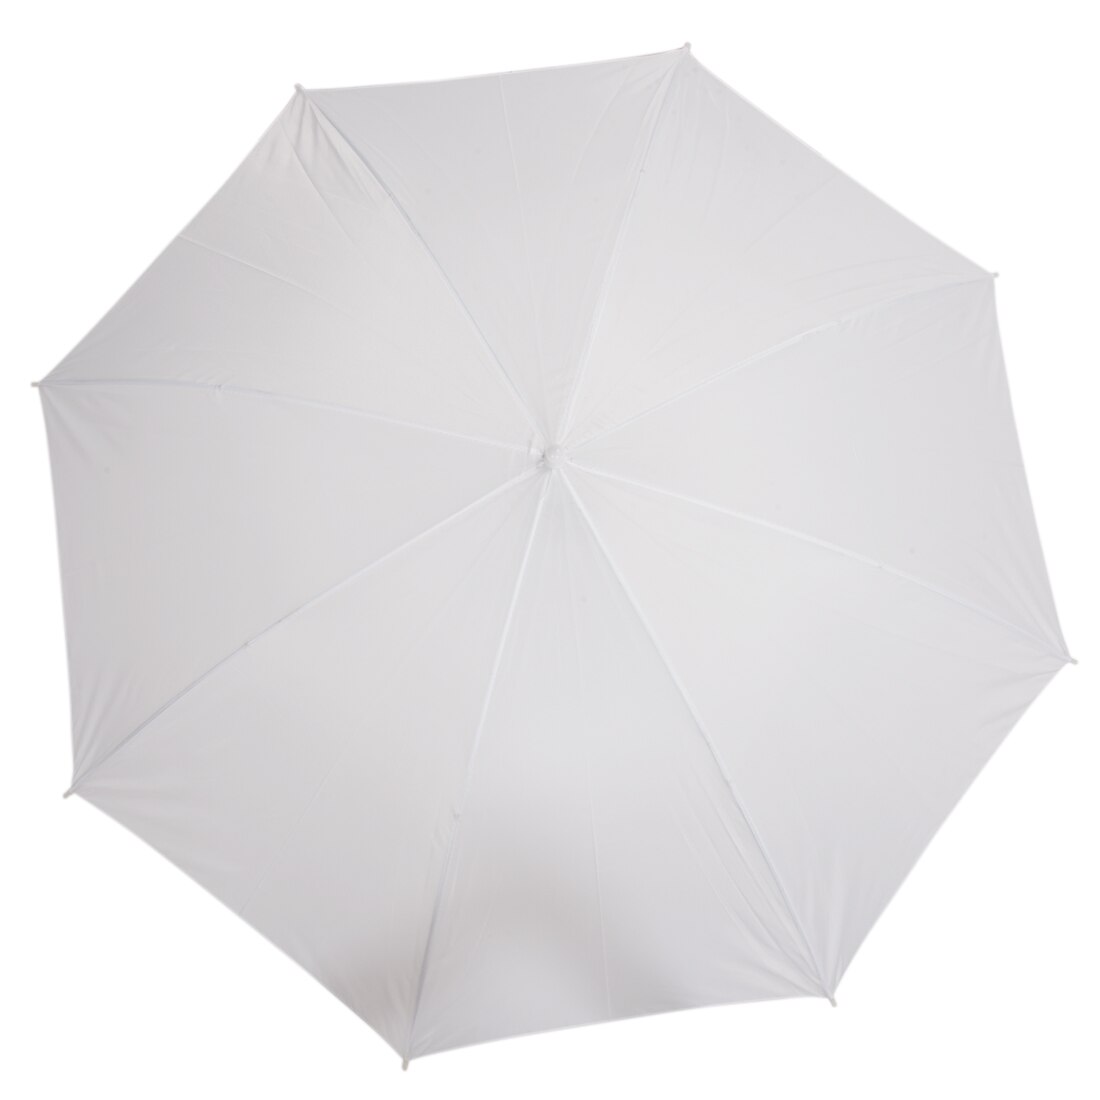 TOP 40 inches/103 cm Witte Doorschijnende Flash voor Zachte Paraplu of Fotostudio